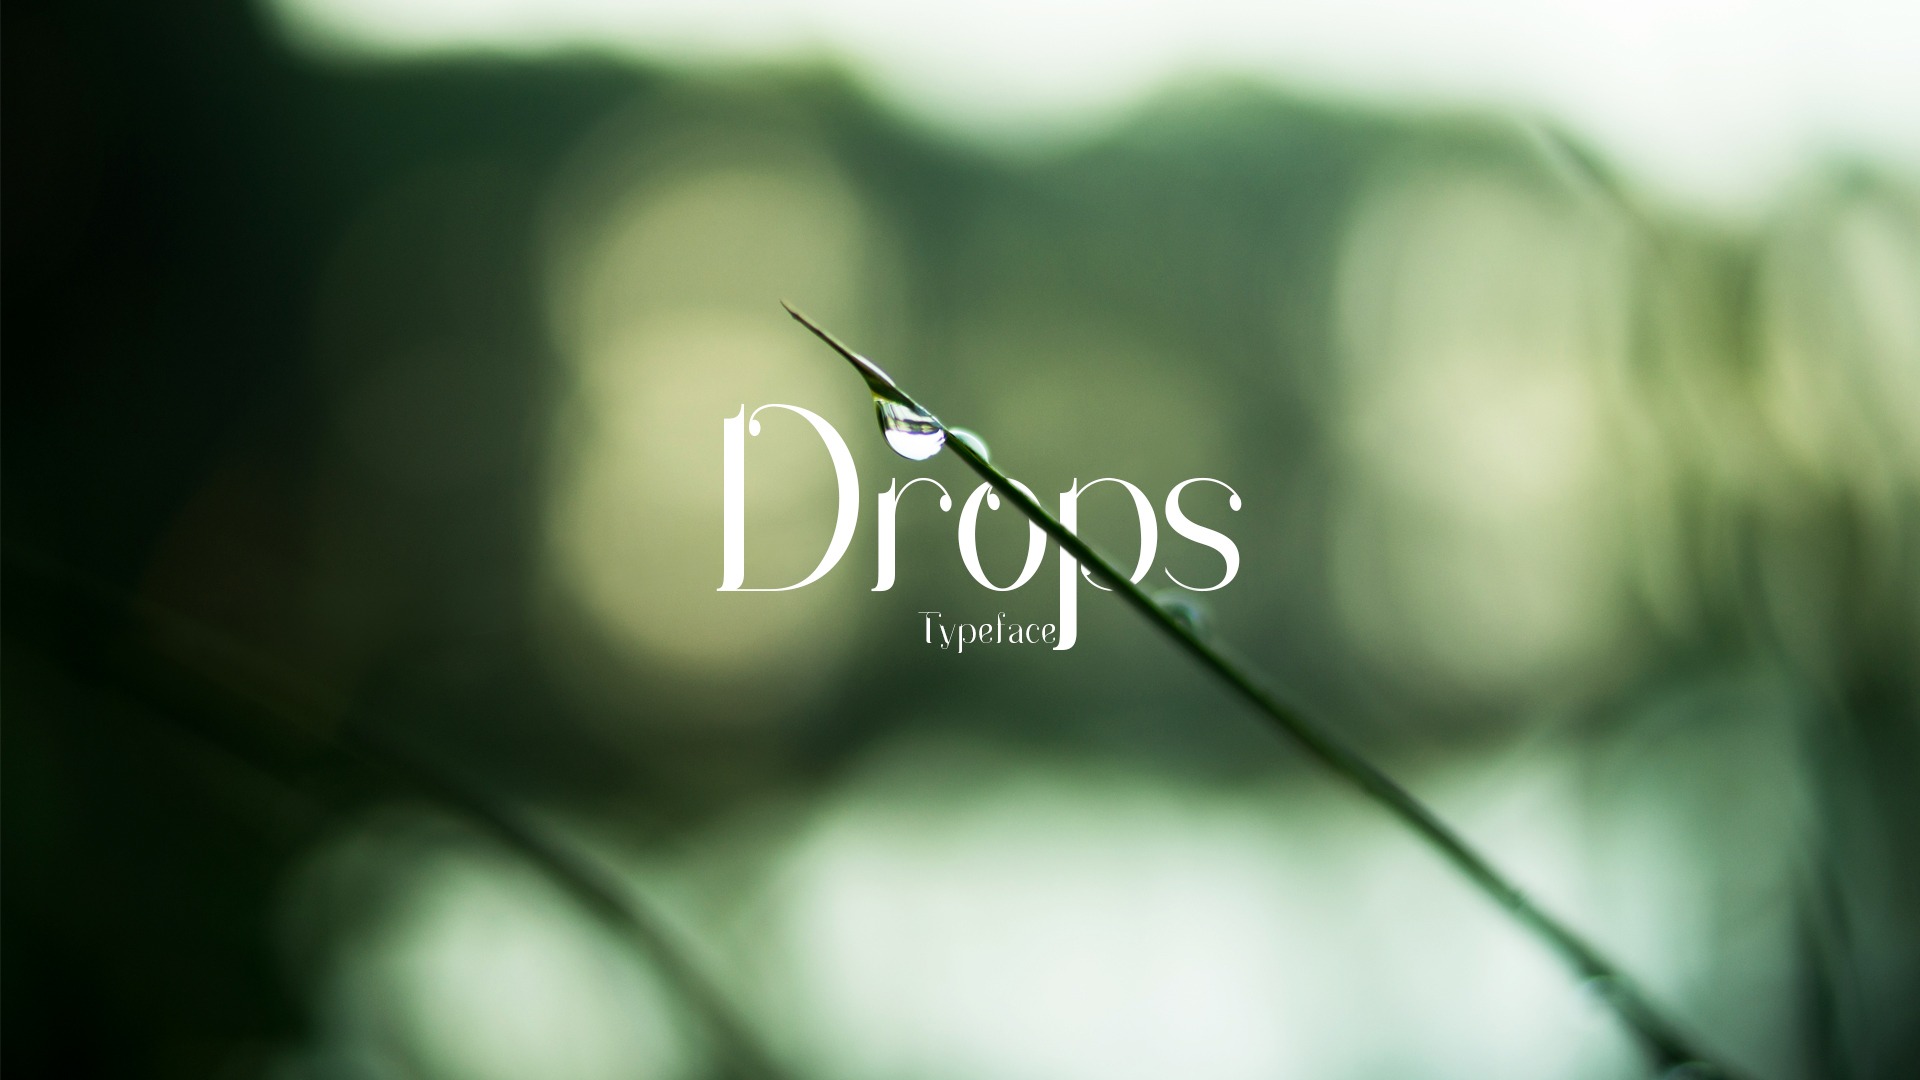 Drops Font